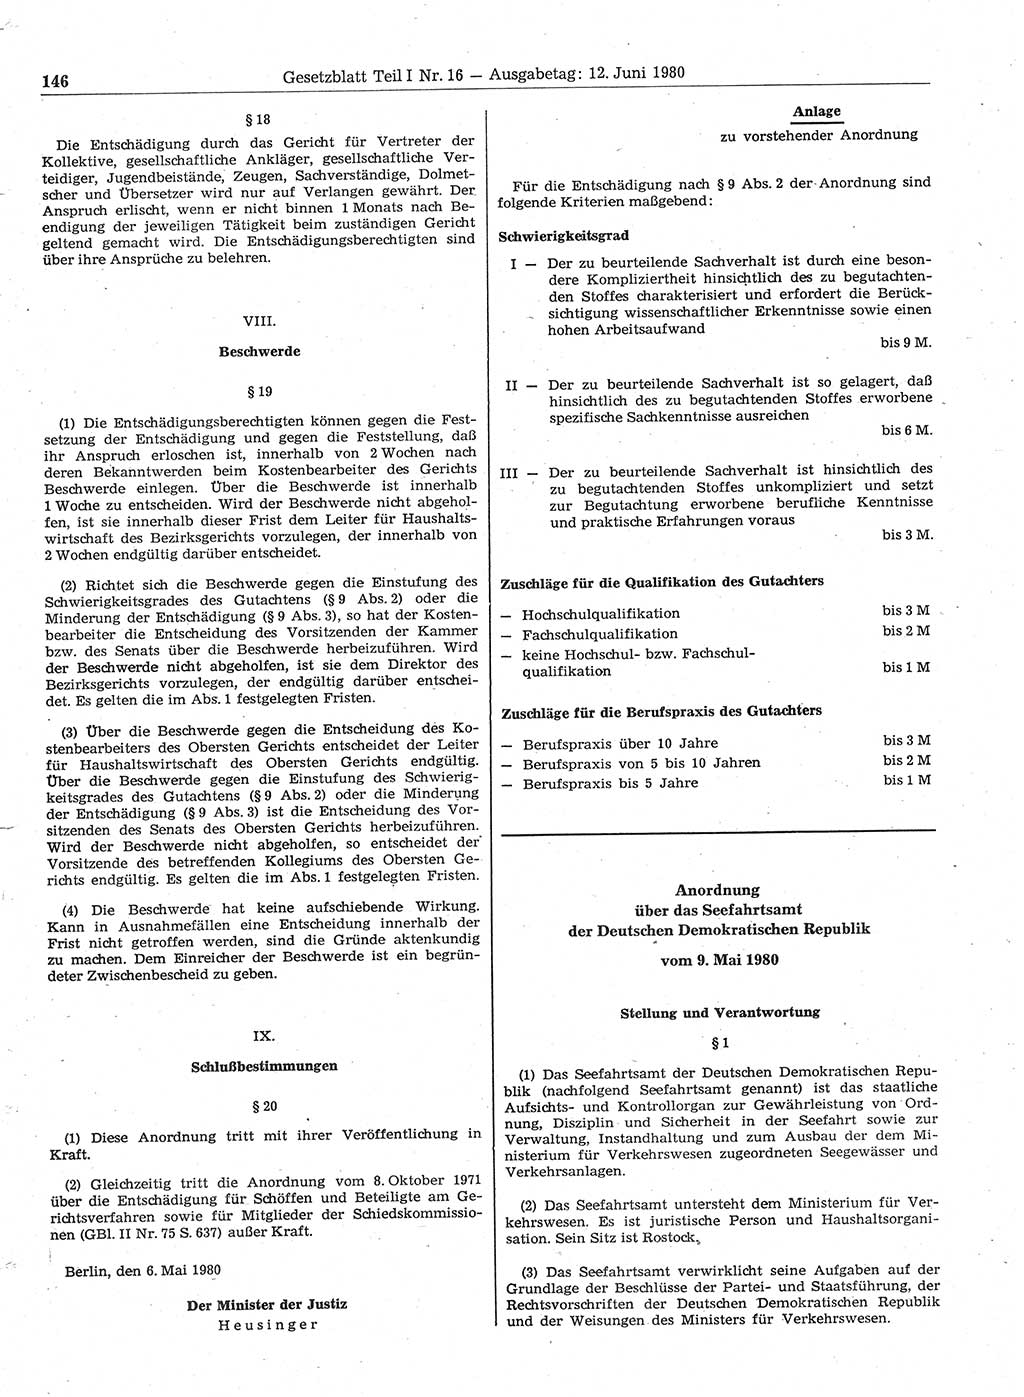 Gesetzblatt (GBl.) der Deutschen Demokratischen Republik (DDR) Teil Ⅰ 1980, Seite 146 (GBl. DDR Ⅰ 1980, S. 146)